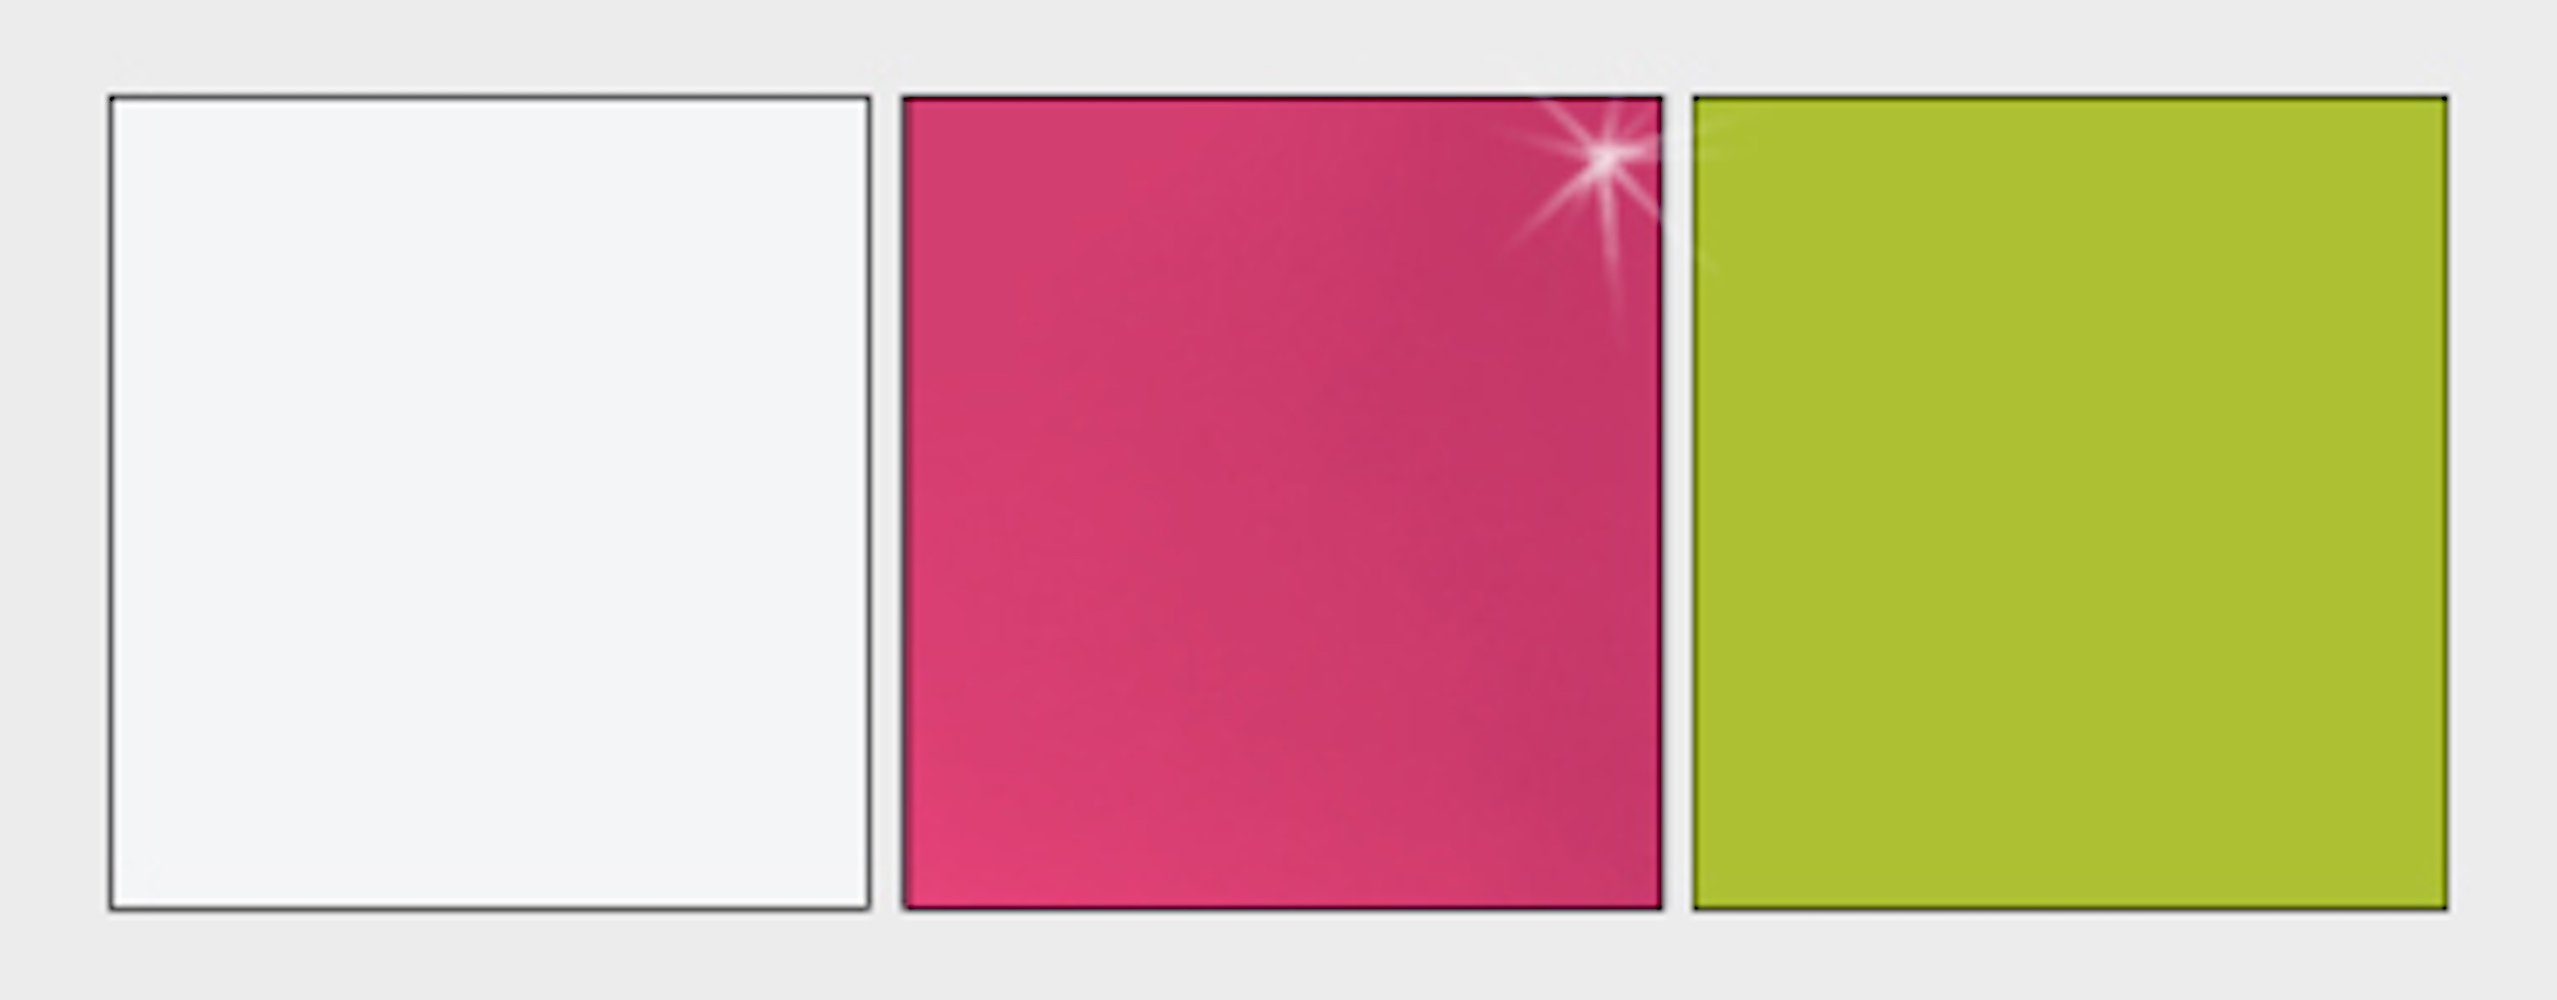 Feldmann-Wohnen Eckschrank Guliver (Guliver) 87cm der weiß Schubkasten Korpus Frontfarbe & Griffe 1 glänzend Farbe rosa wählbar